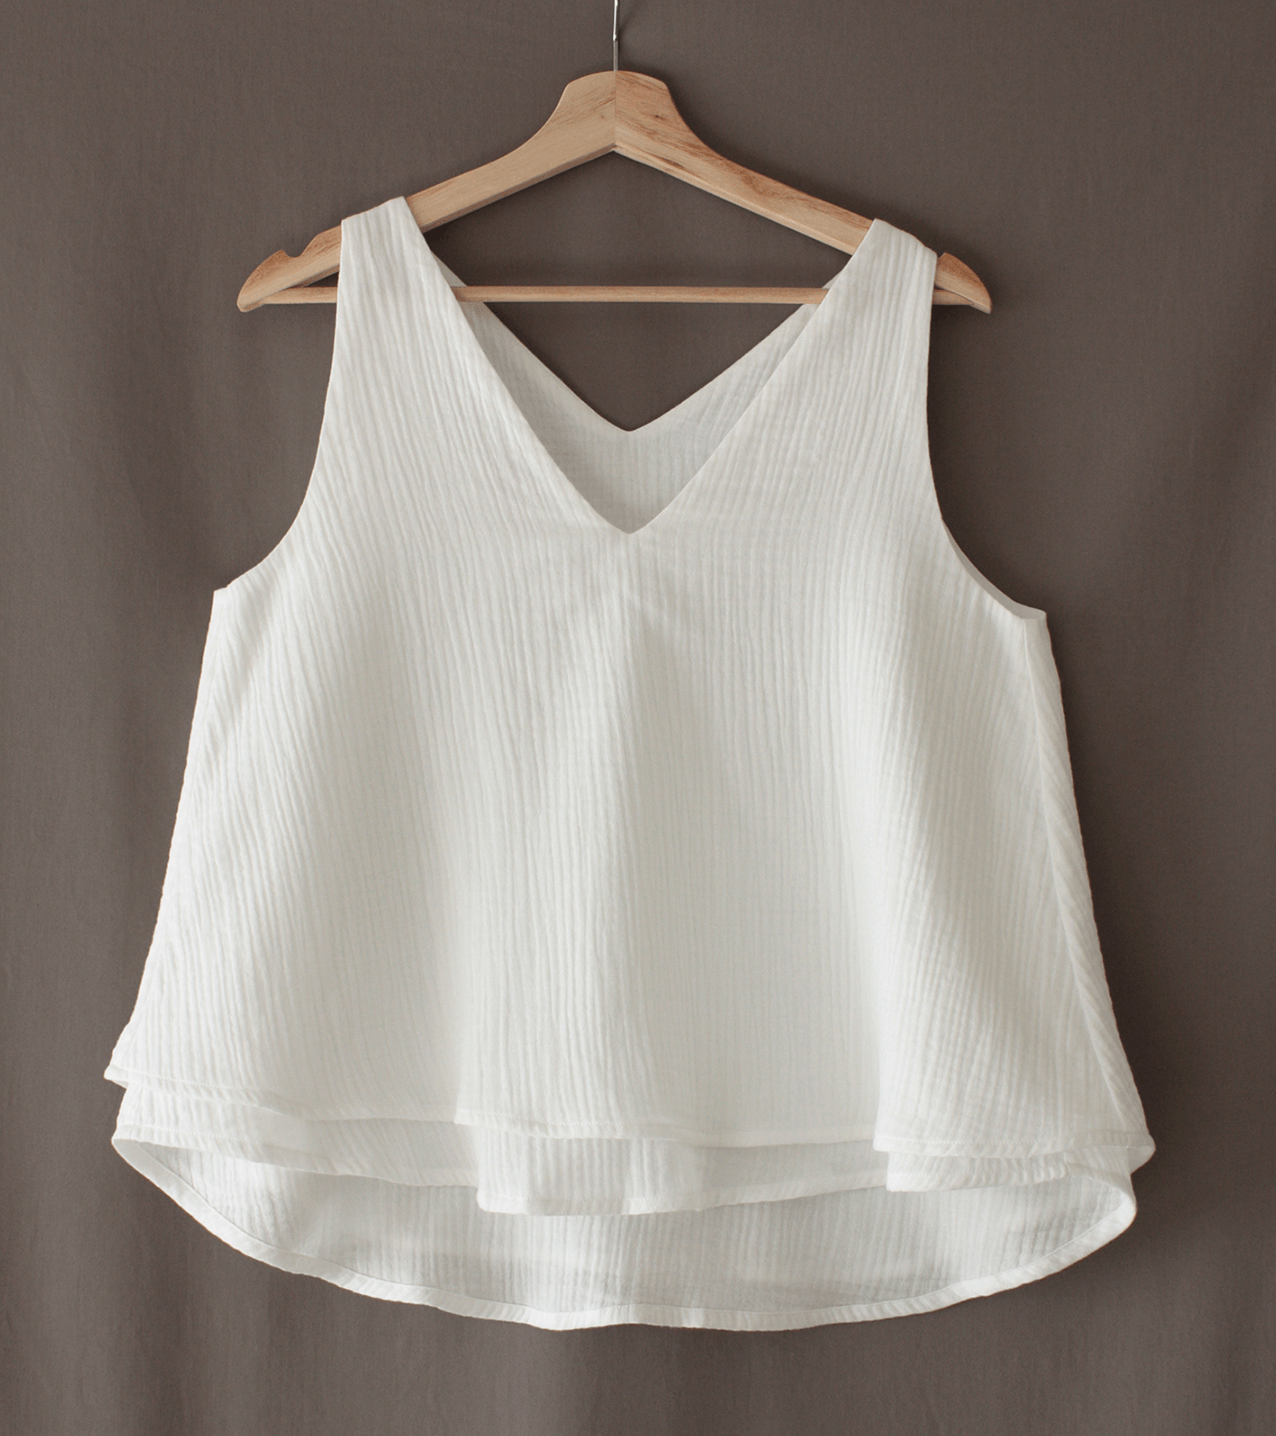 Comerciante Habitat aire Blusa blanca de algodón orgánico hecha en España Dopic – The Goood Shop